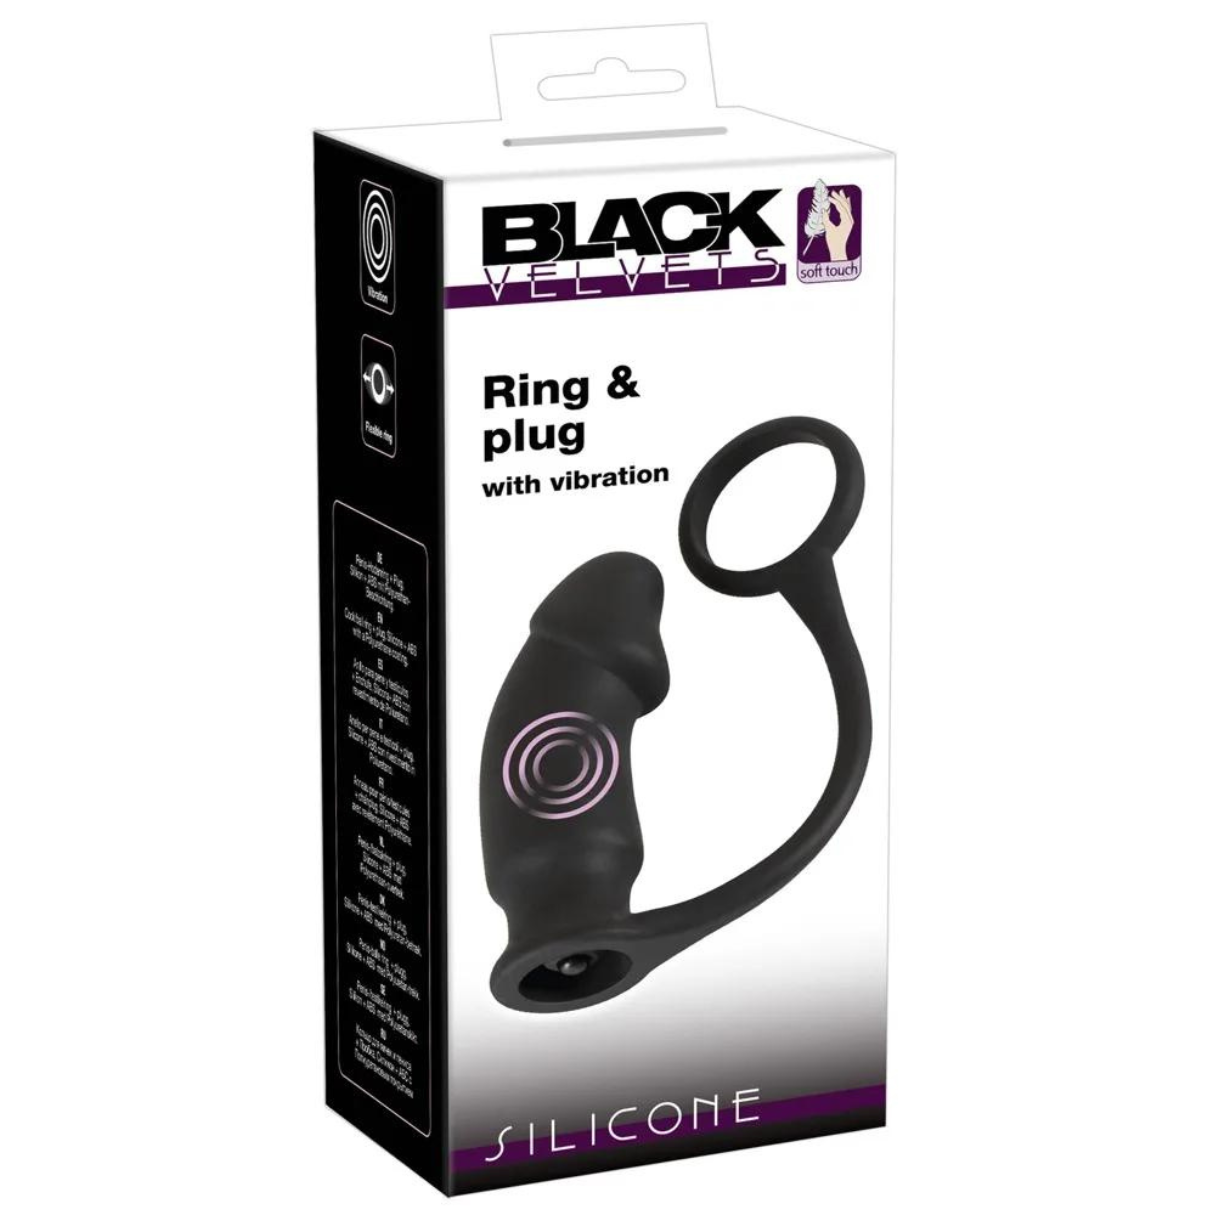 Vibrator & with plug VELVETS vibration BLACK Ring